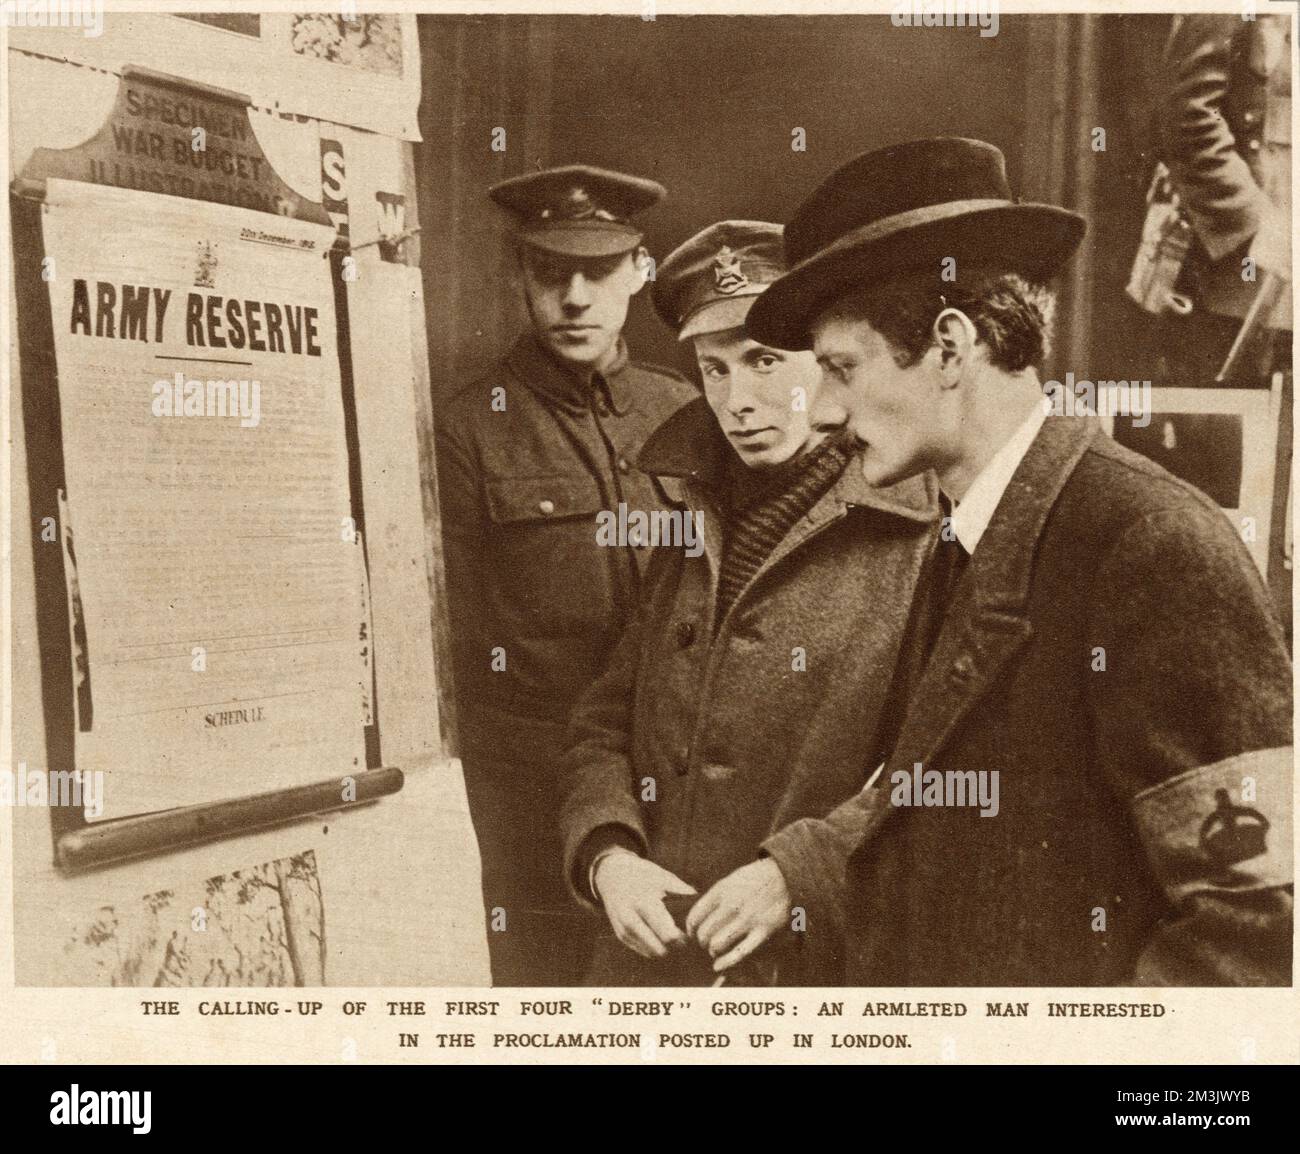 Zwei Soldaten sehen zu, wie ein Zivilist die Notiz liest, die zeigt, wie Freiwillige sich engagieren können. Diese Soldaten waren bekannt als Kitchener's Men und kamen oft aus derselben Fabrik oder Stadt. Sie waren bekannt als "Pals Bataillone". Er trägt ein Armband, das zeigt, dass er ein offizieller Krieger ist. Stockfoto